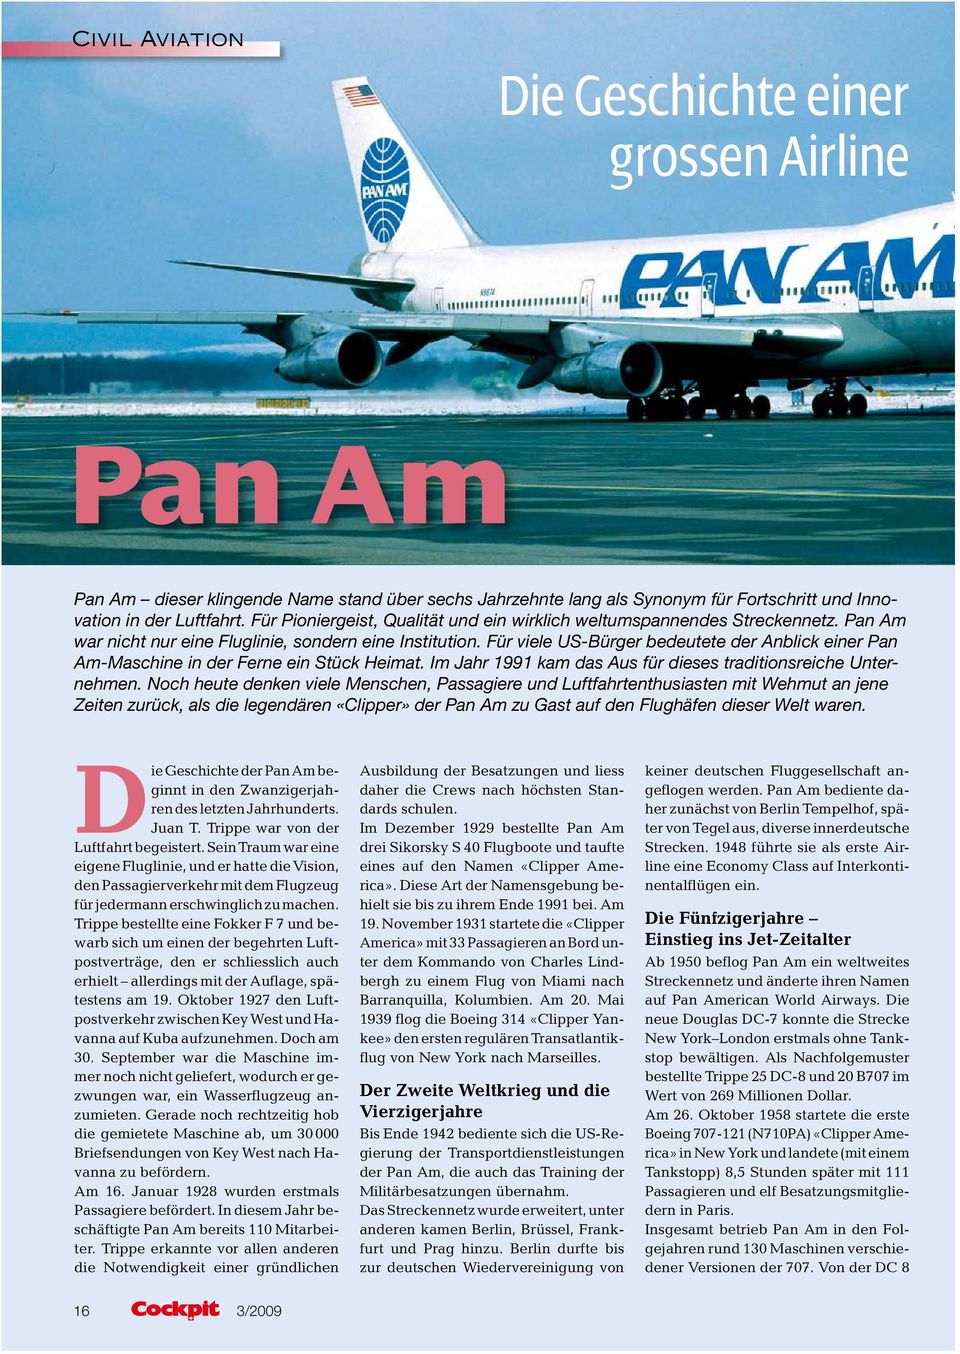 Für viele US-Bürger bedeutete der Anblick einer Pan Am-Maschine in der Ferne ein Stück Heimat. Im Jahr 1991 kam das Aus für dieses traditionsreiche Unternehmen.